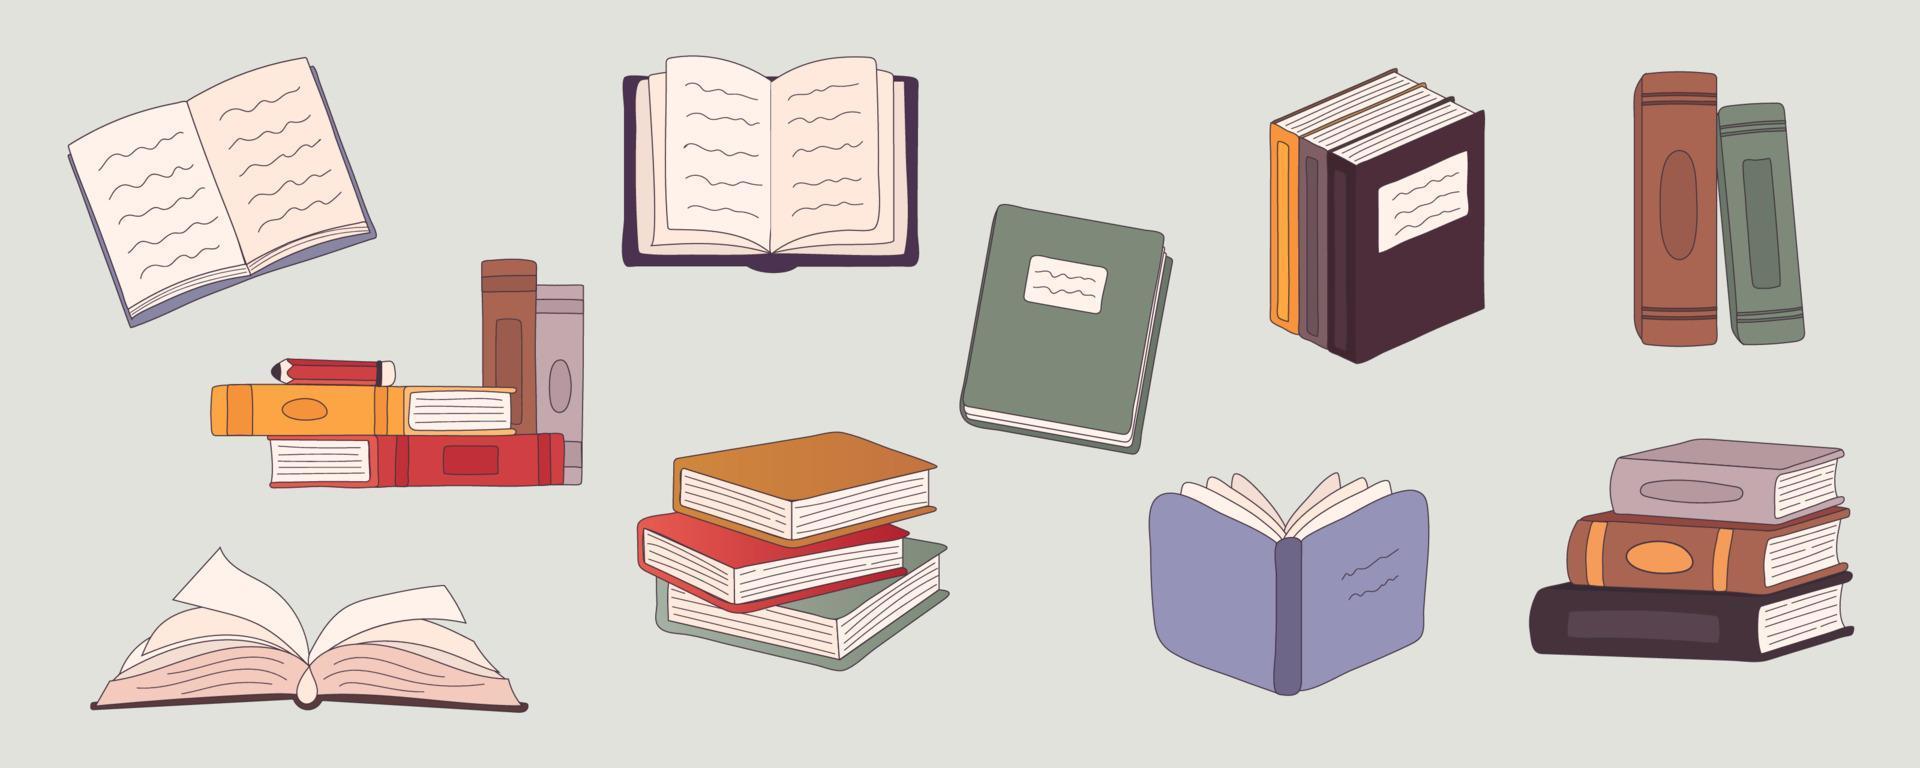 stapel boeken vector cartoon afbeelding instellen. stapel boekencollectie voor schoolbibliotheek of boekhandel